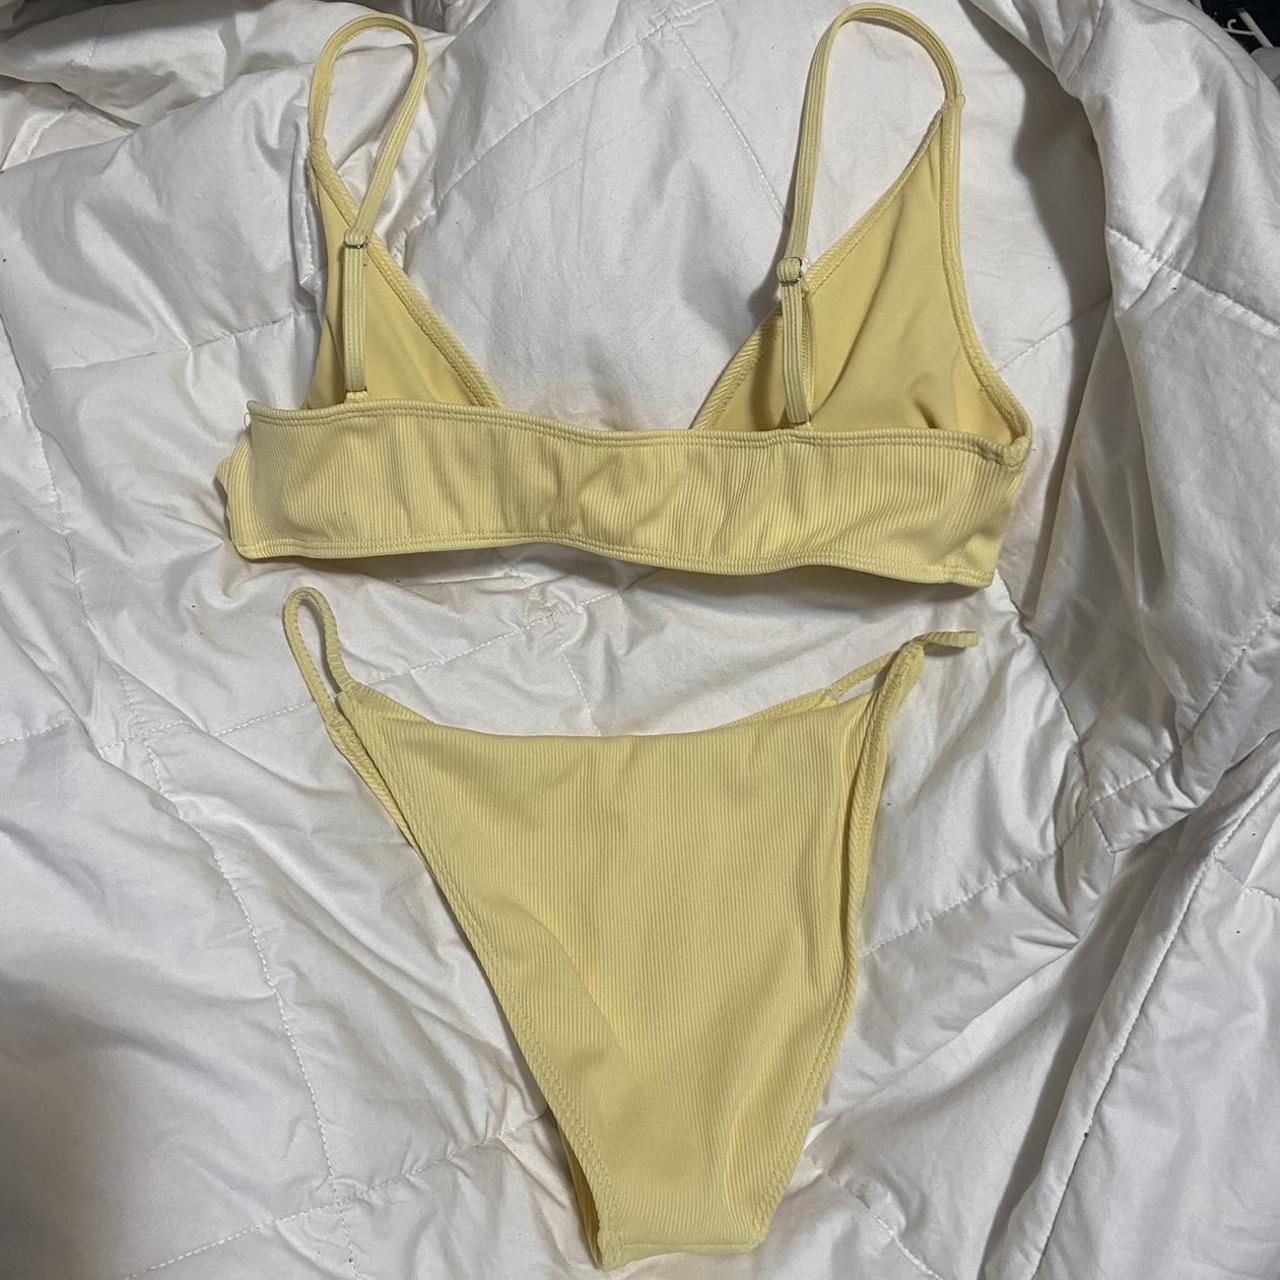 PacSun Women's Yellow Bikinis-and-tankini-sets | Depop